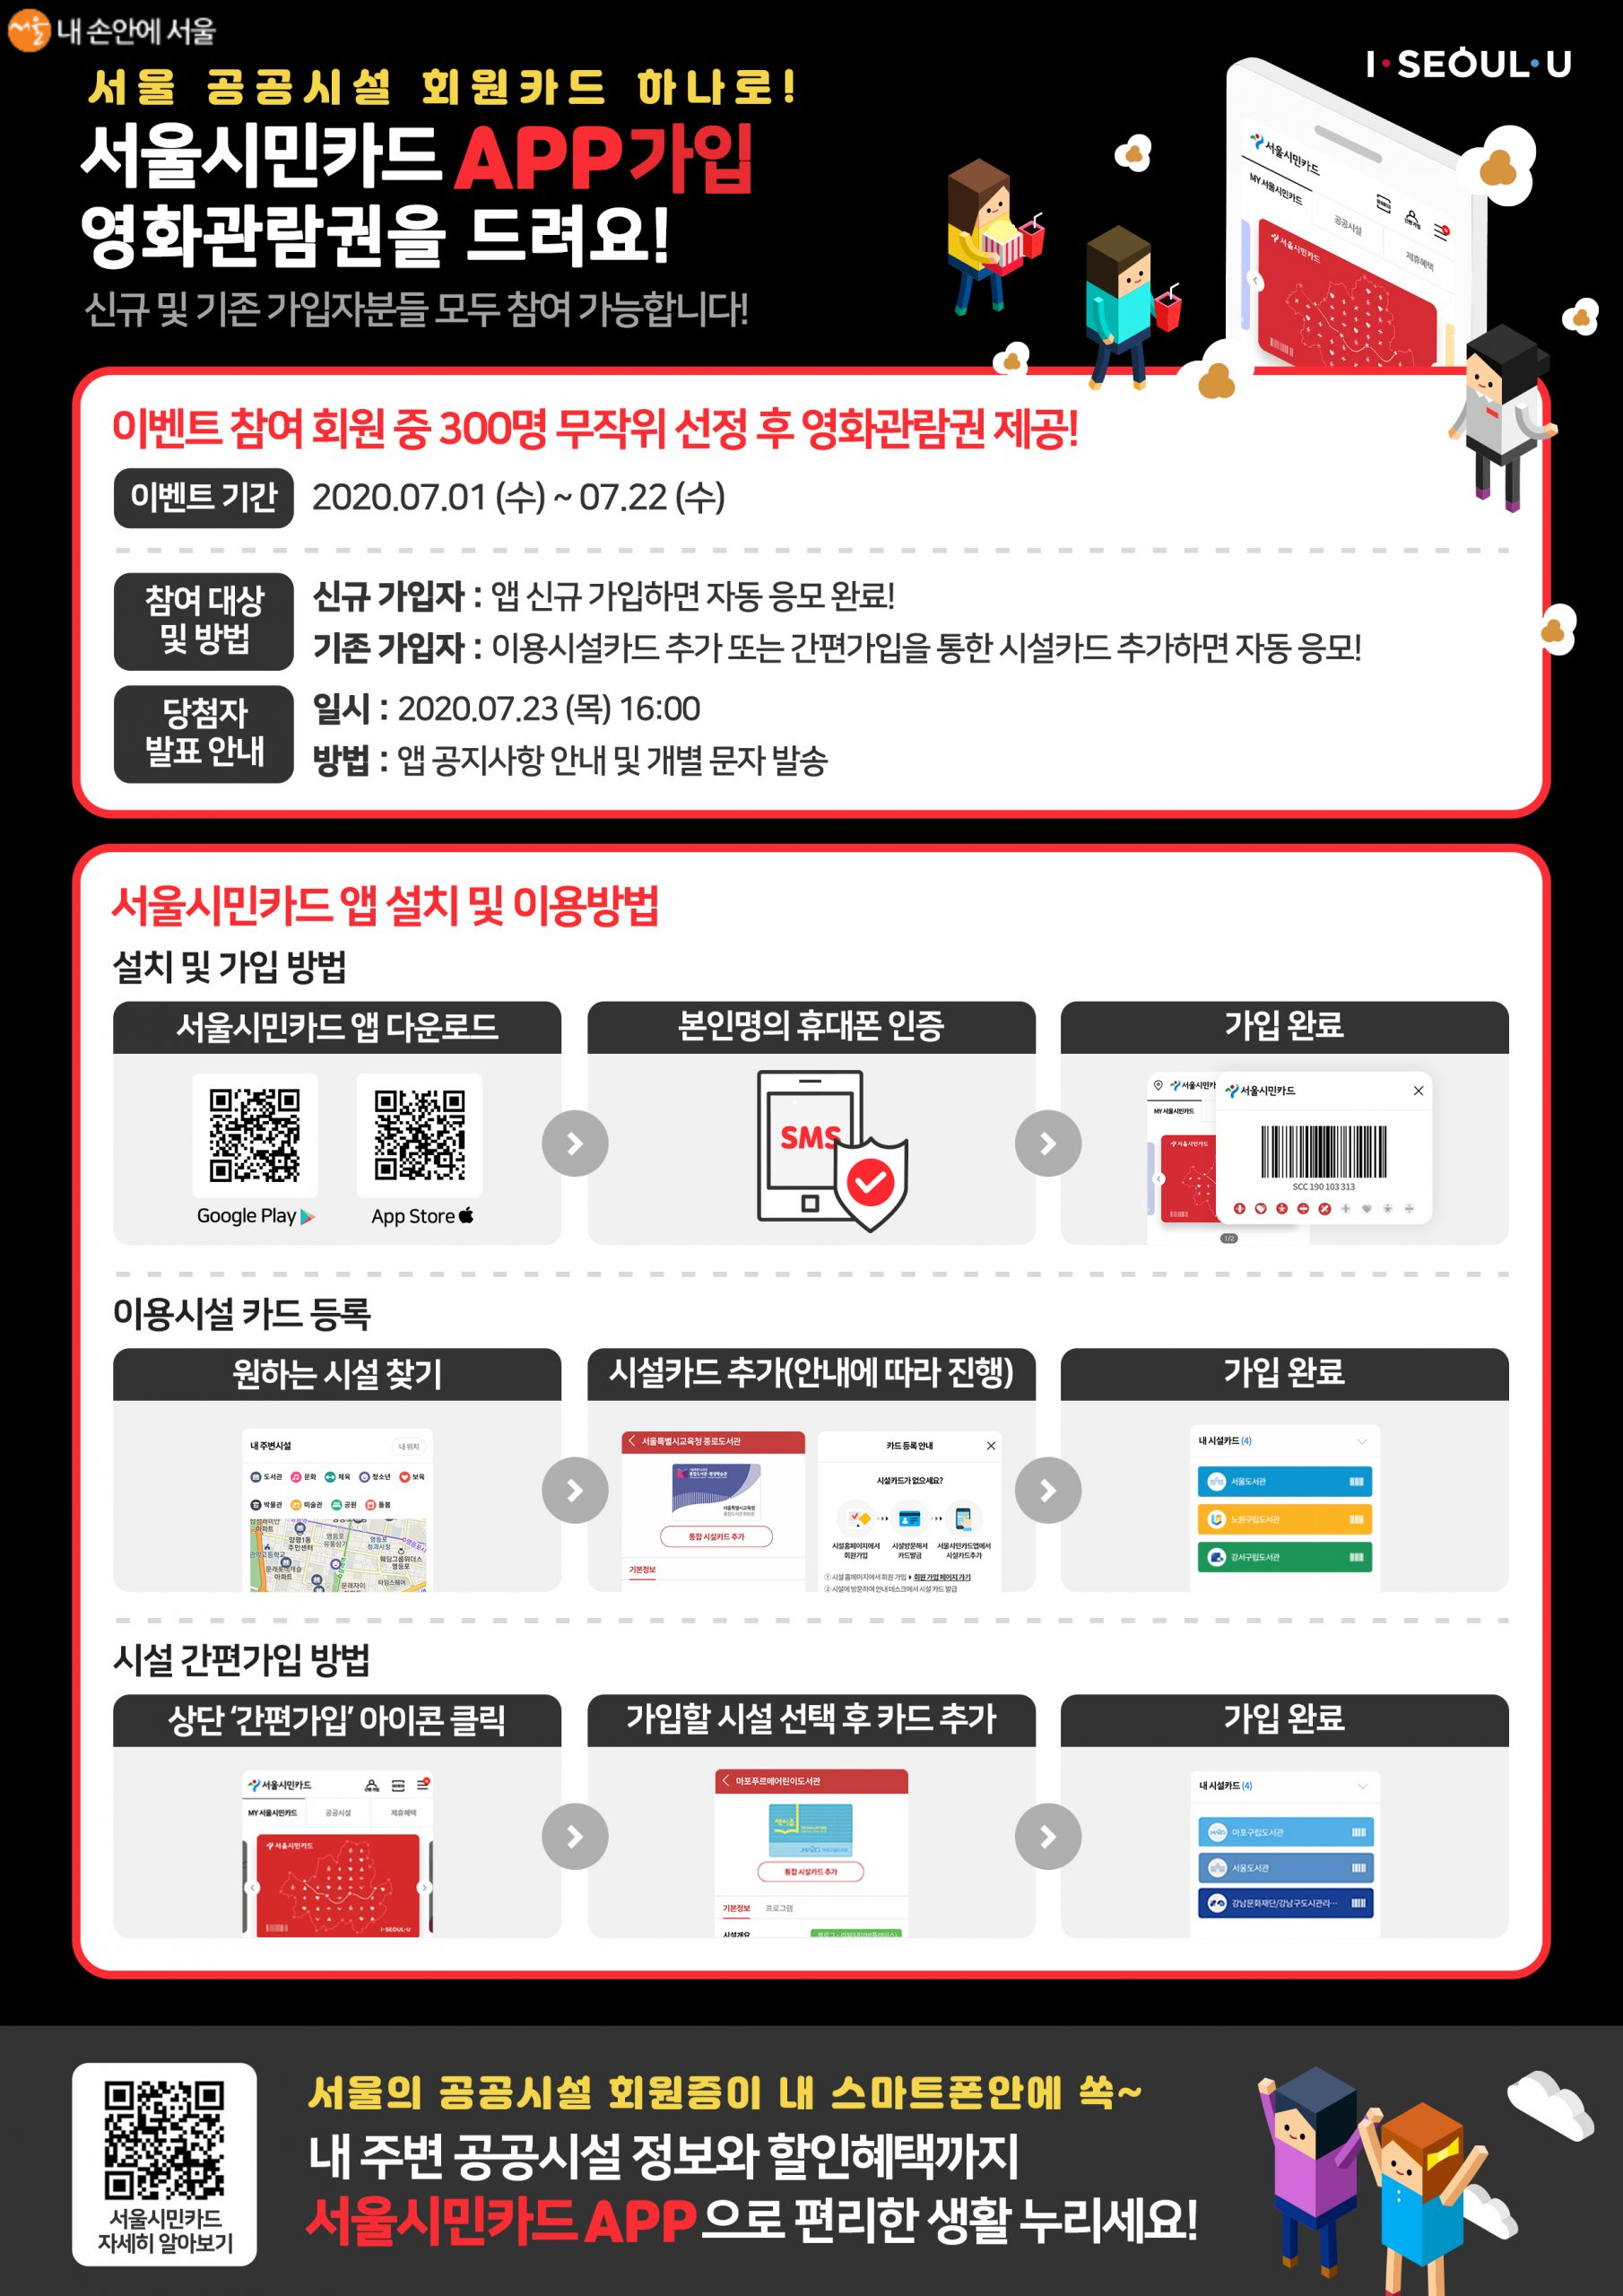 서울시민카드앱에서는 가입 시 영화관람권을 제공하는 이벤트를 22일까지 진행한다.